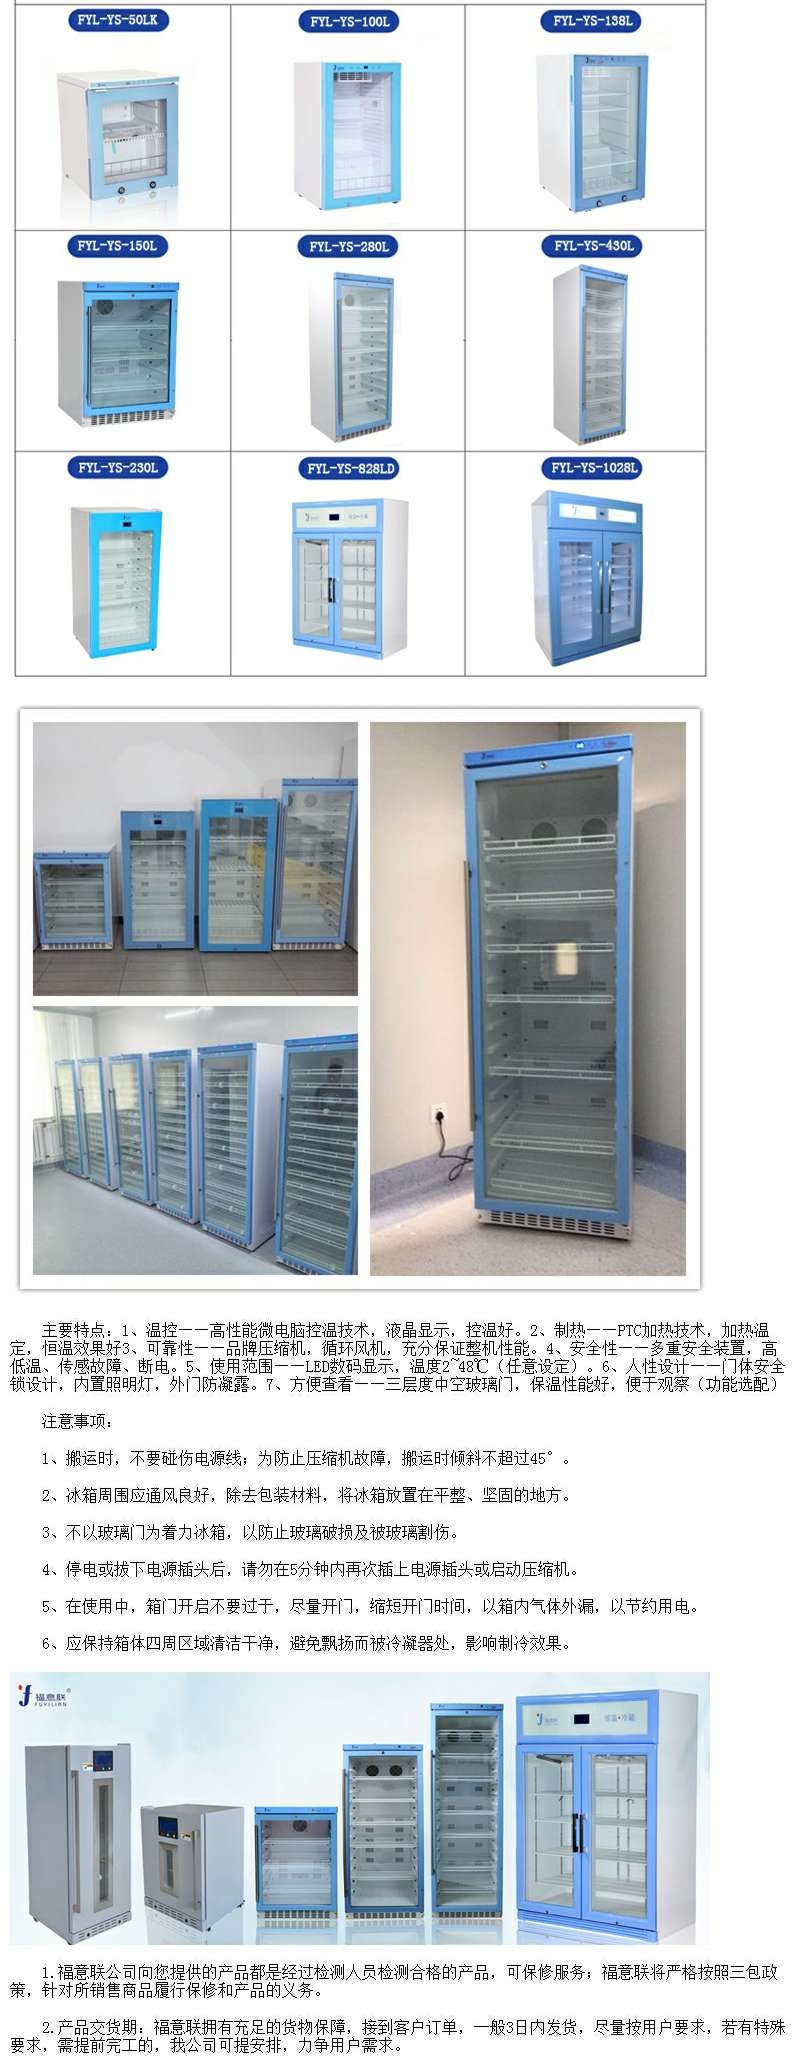 容積150升溫控范圍0-100度每度可調醫用保溫柜